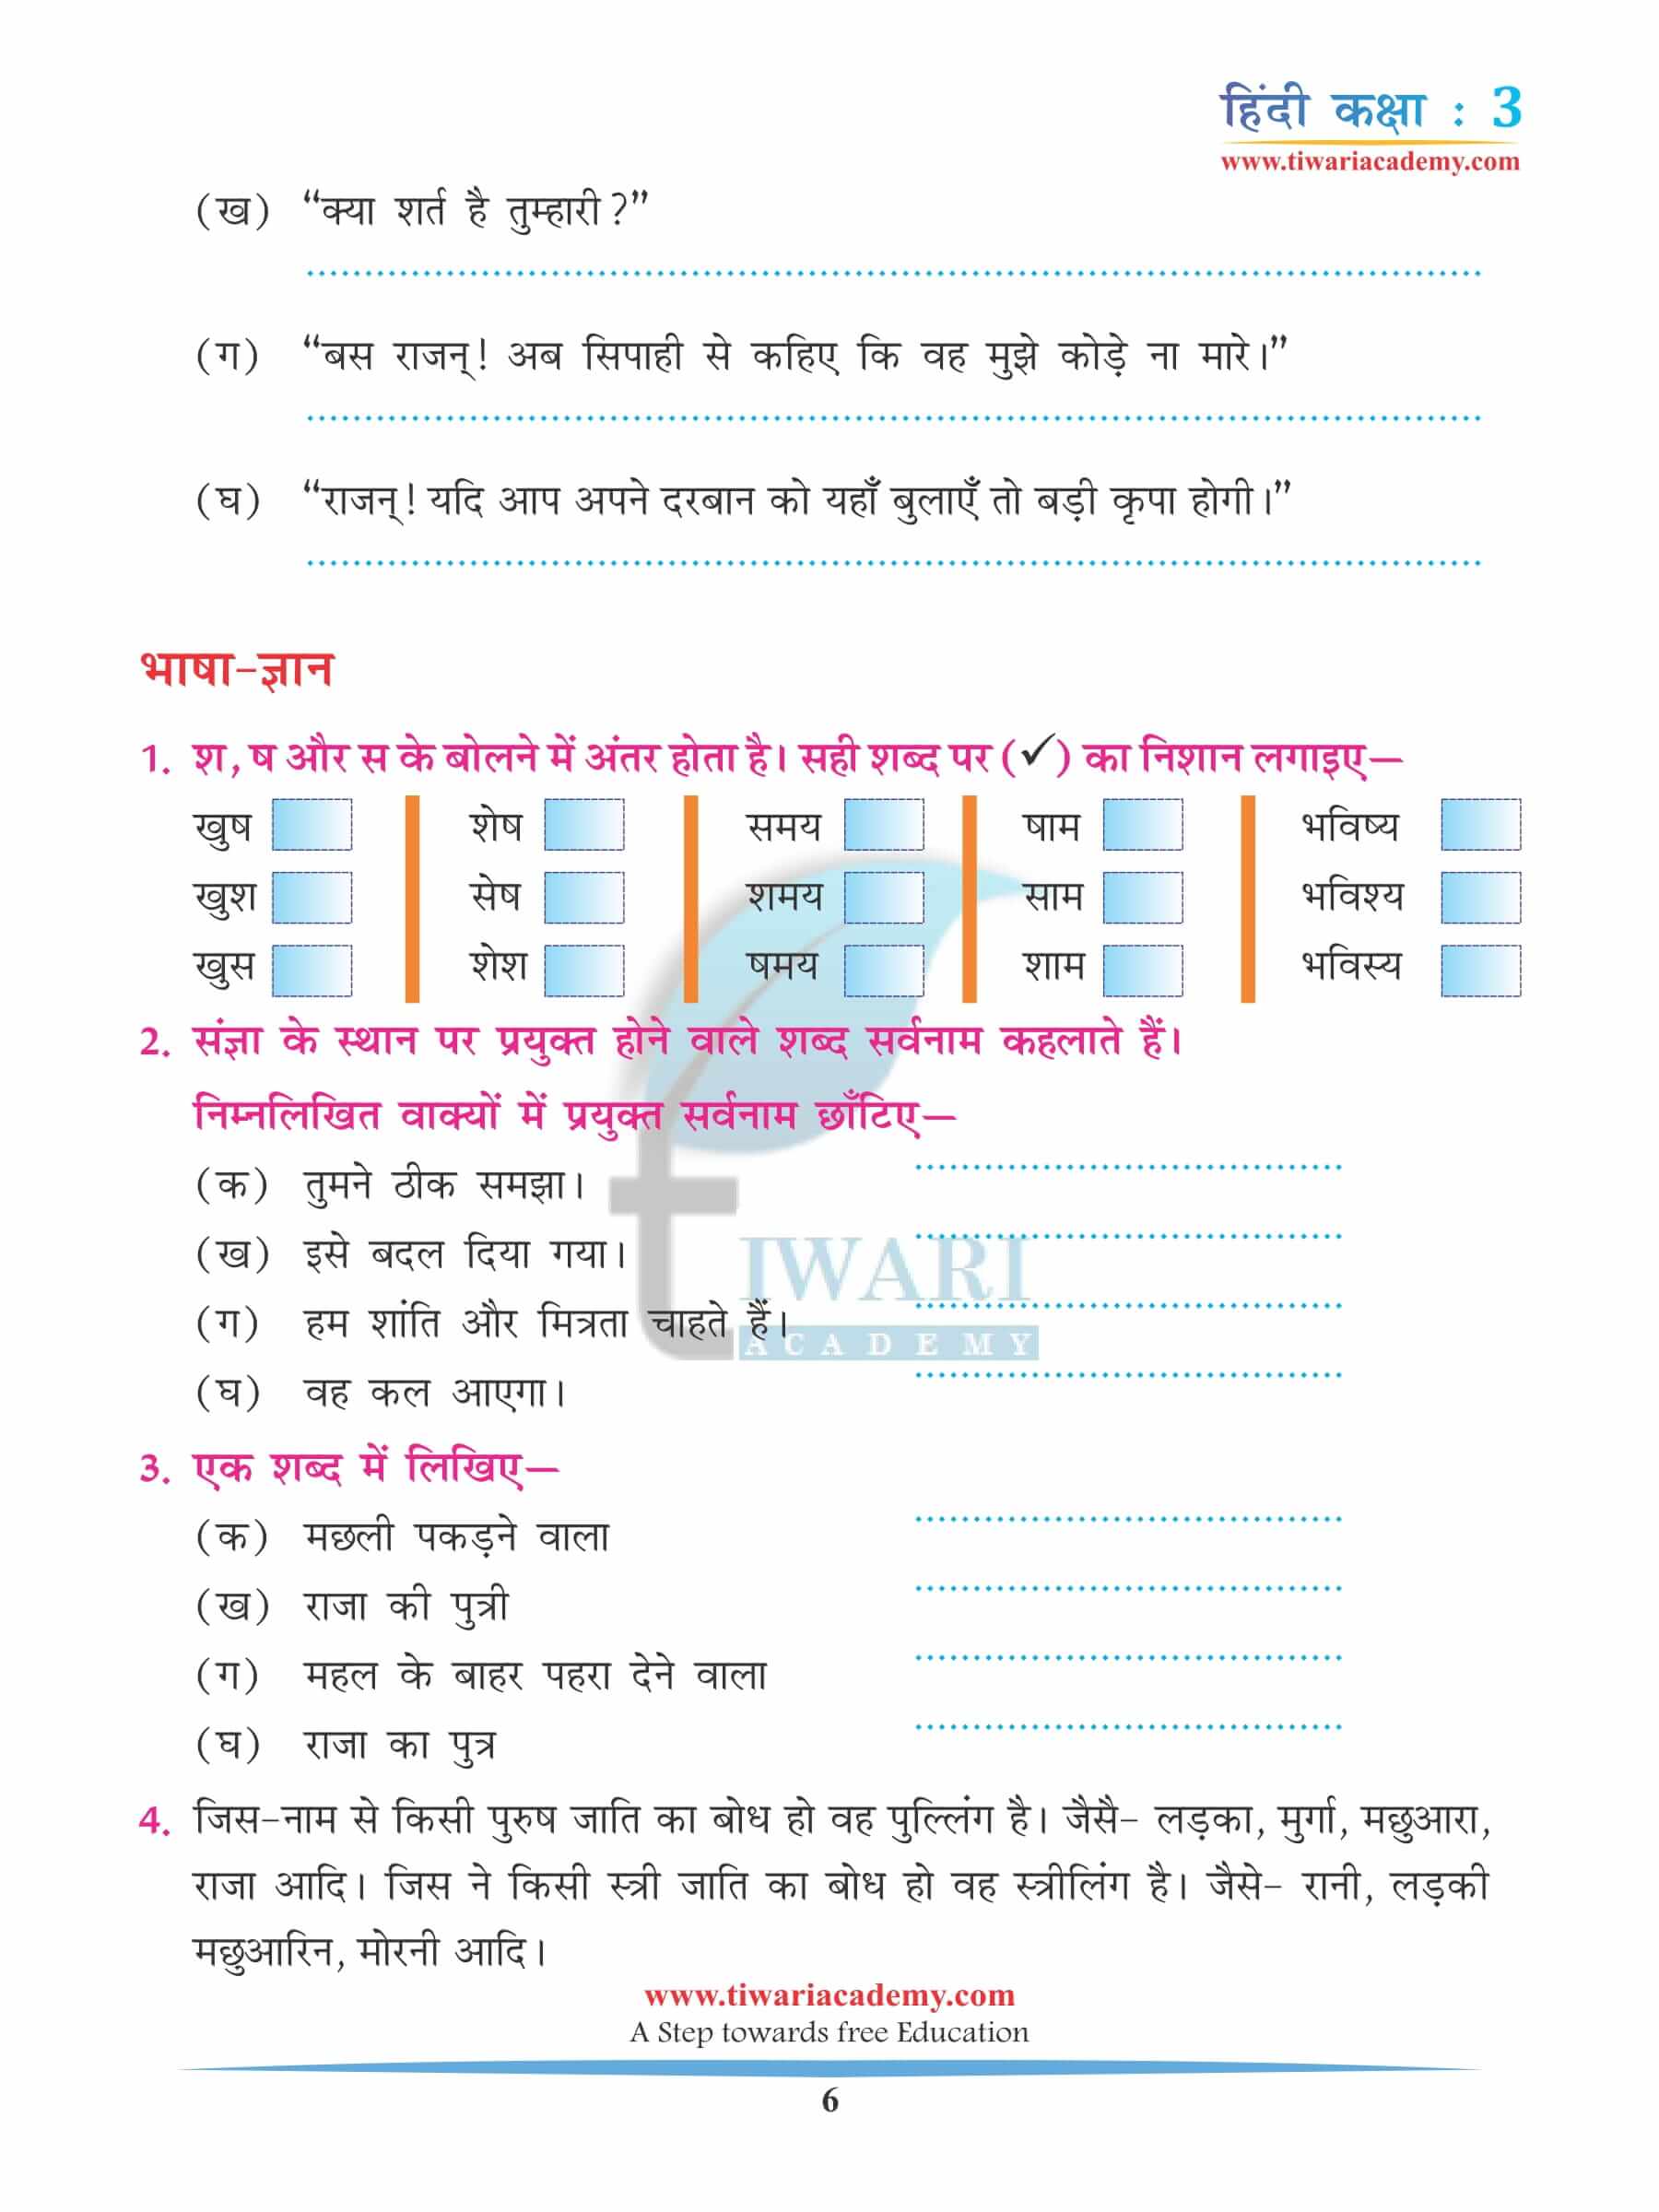 कक्षा 3 हिंदी अध्याय 13 अभ्यास के असाइनमेंट्स